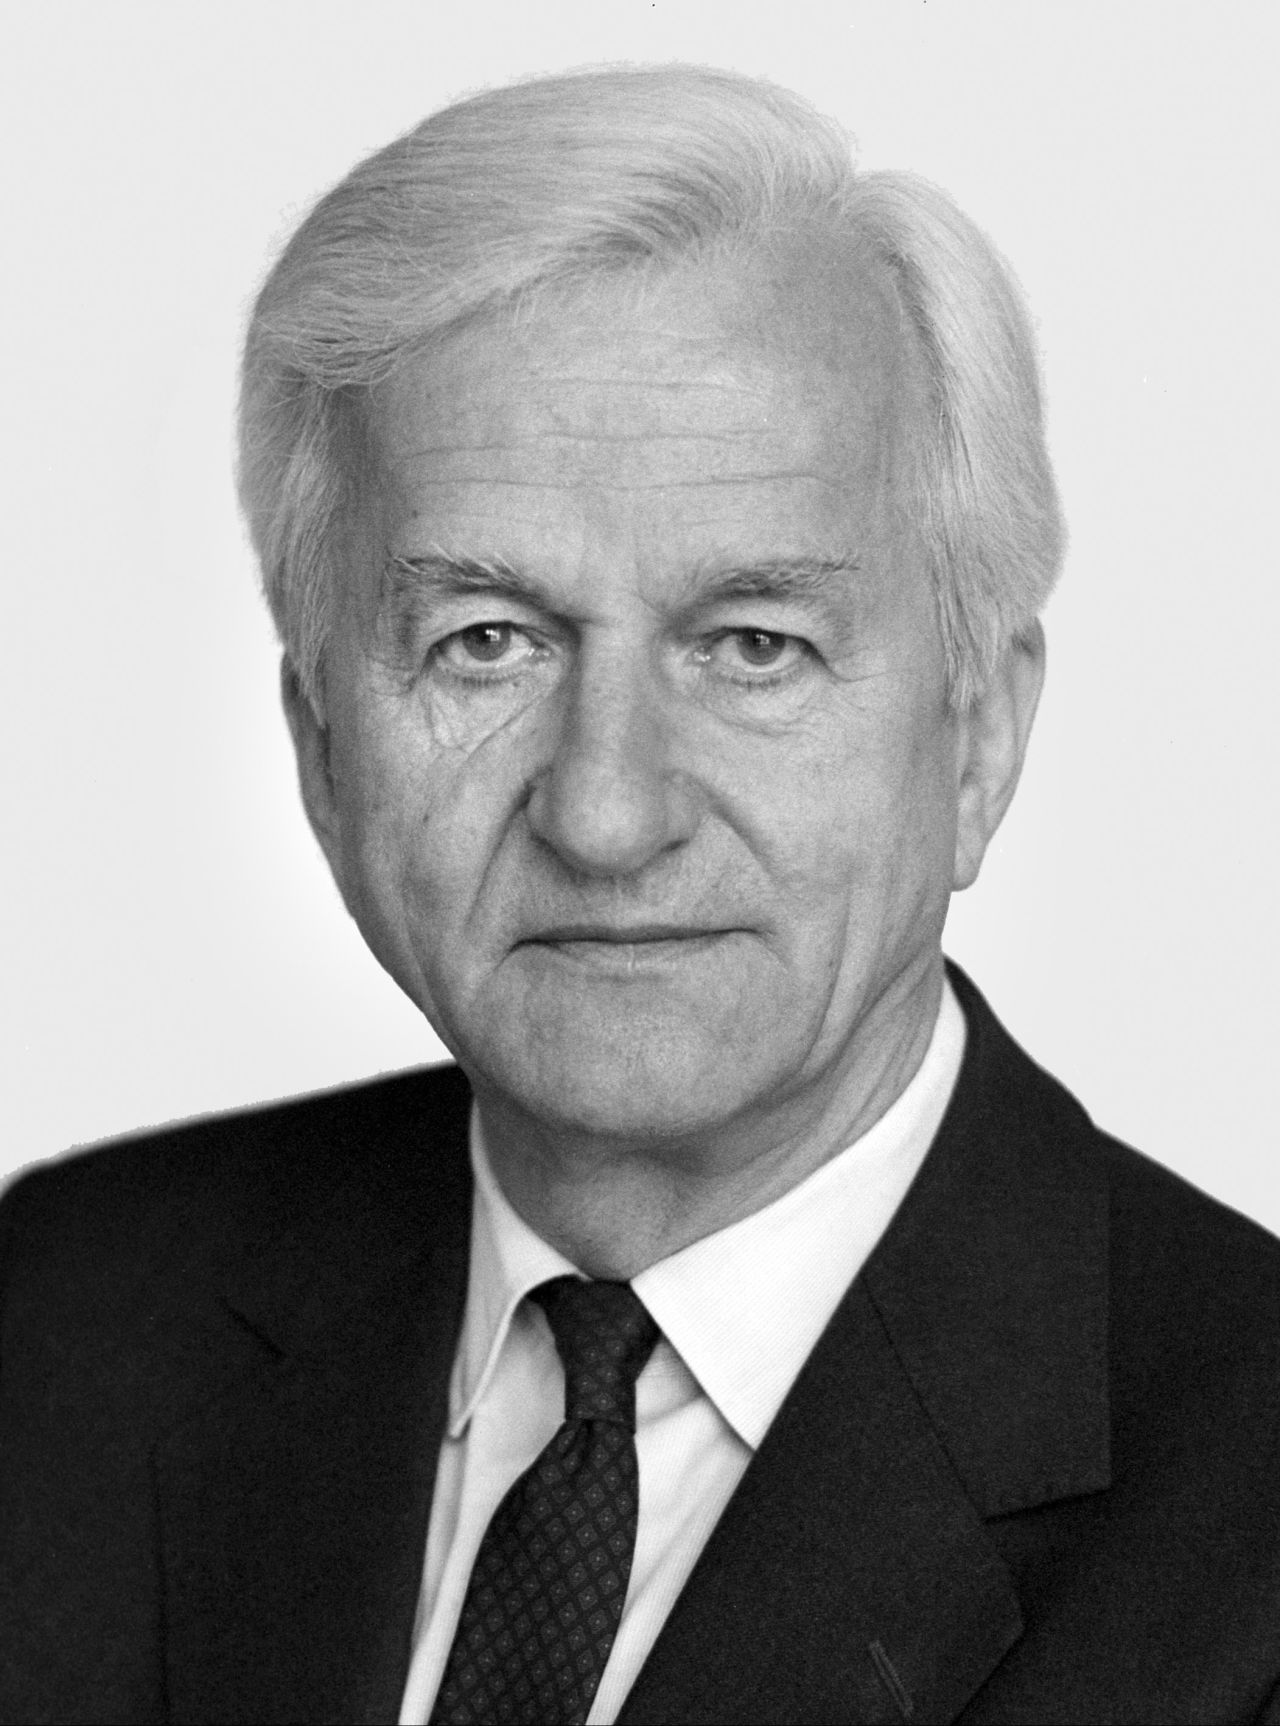 Porträtfotografie von Bundespräsident Richard von Weizsäcker (1984-1994).